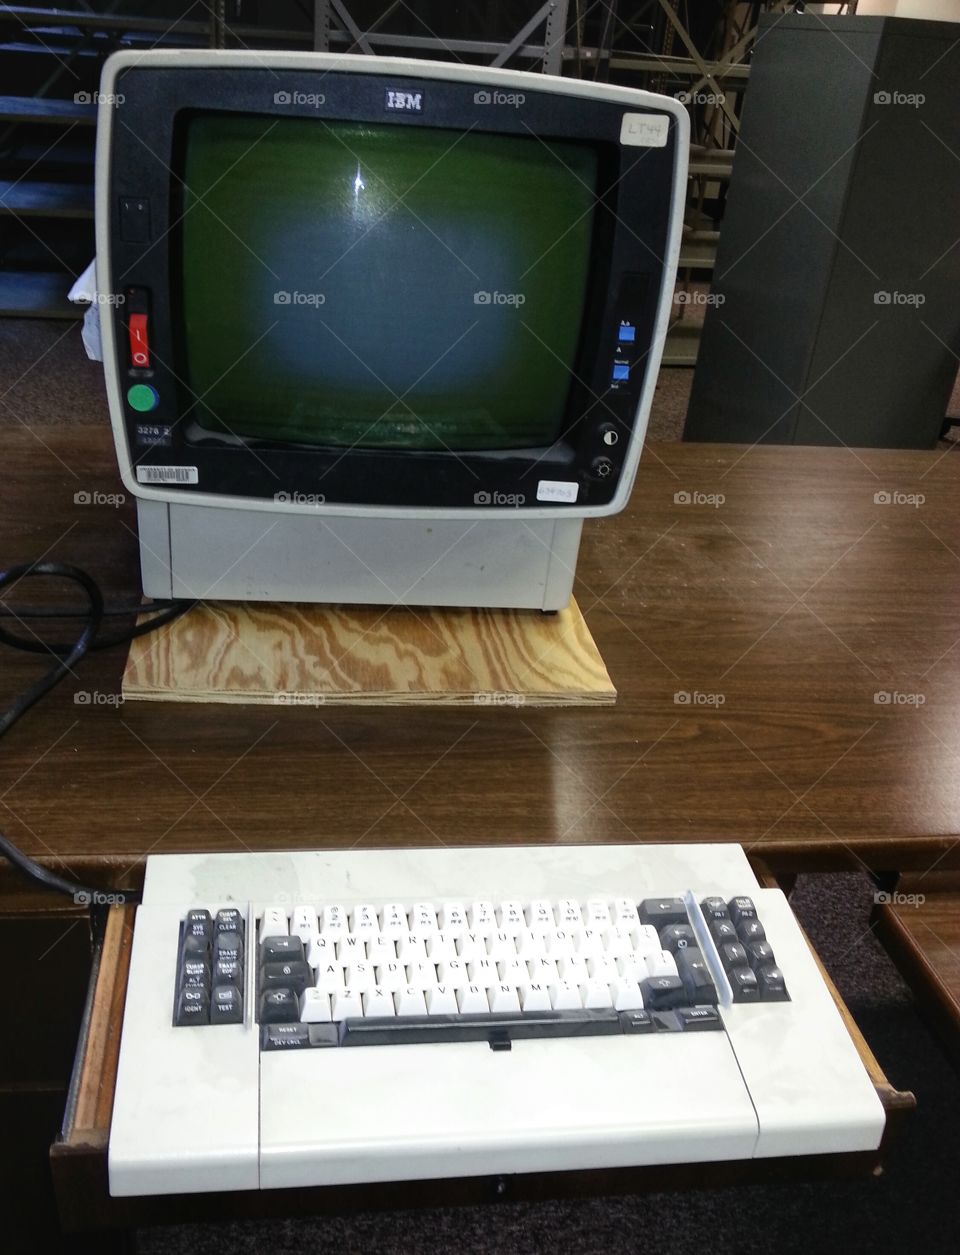 IBM. vintage computer found at work 